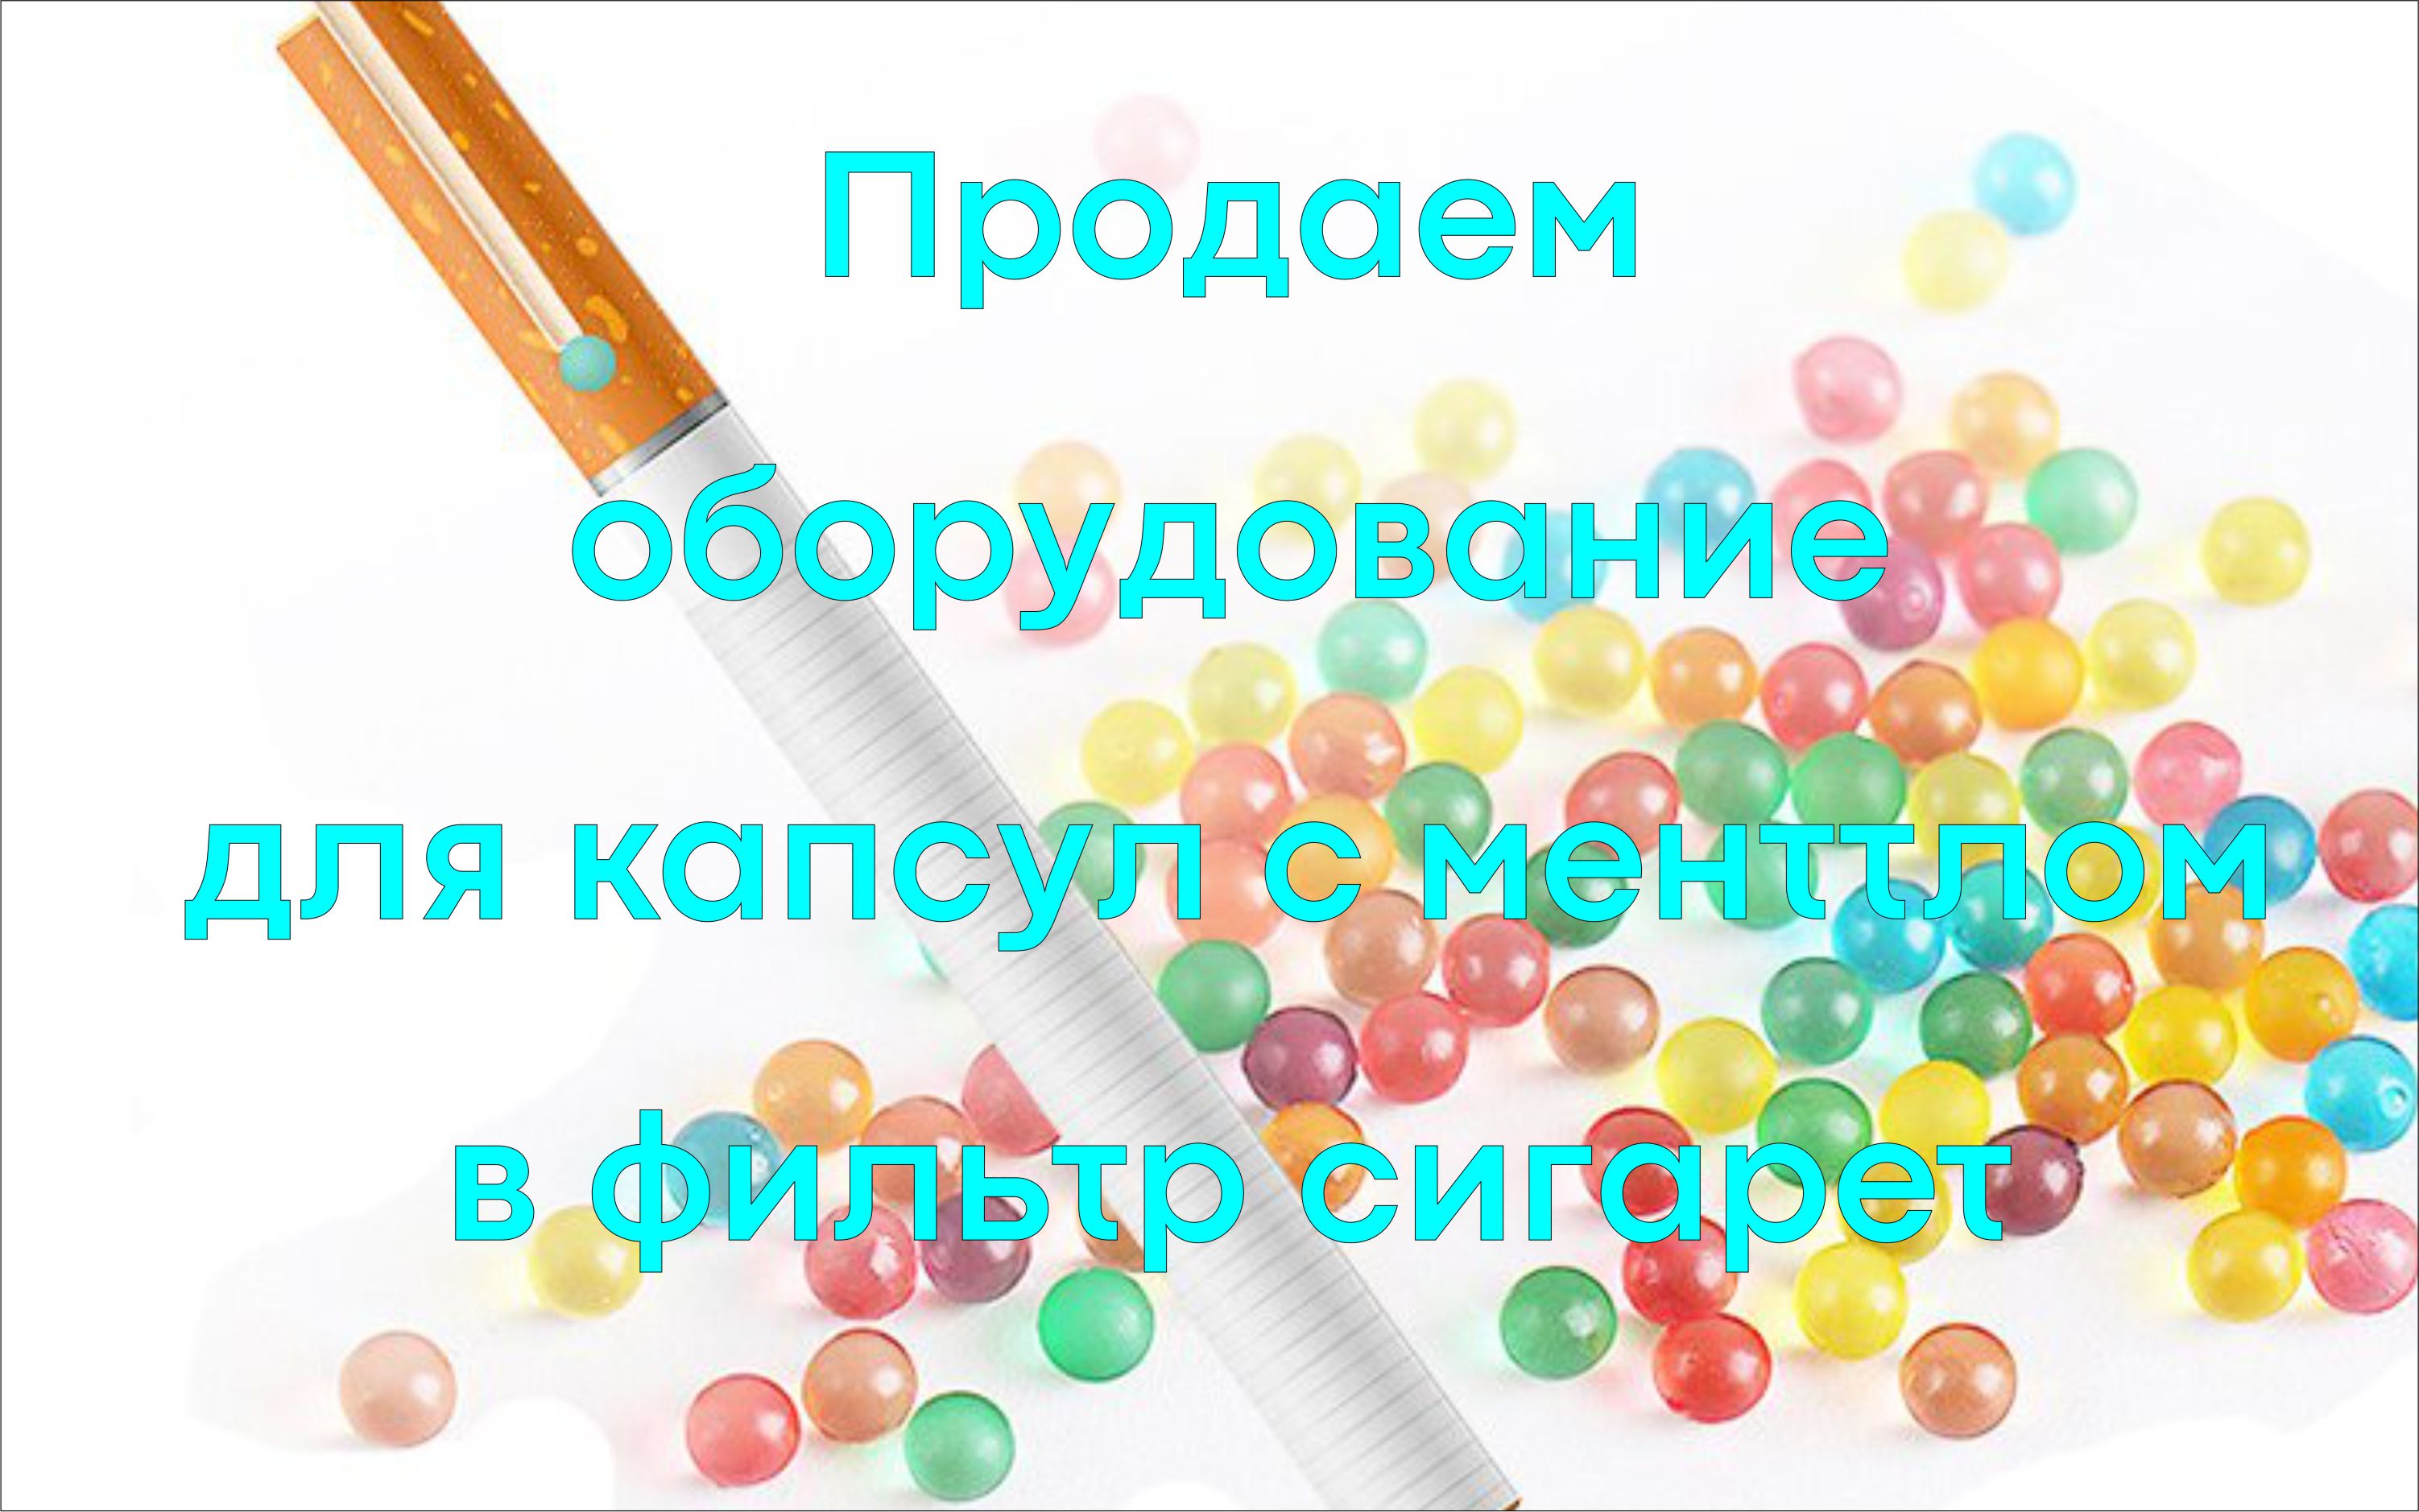 www.Kapsulator.ru Capsulator capsule morbide senza soluzione di continuità con un guscio di gelatina, agar, alginato